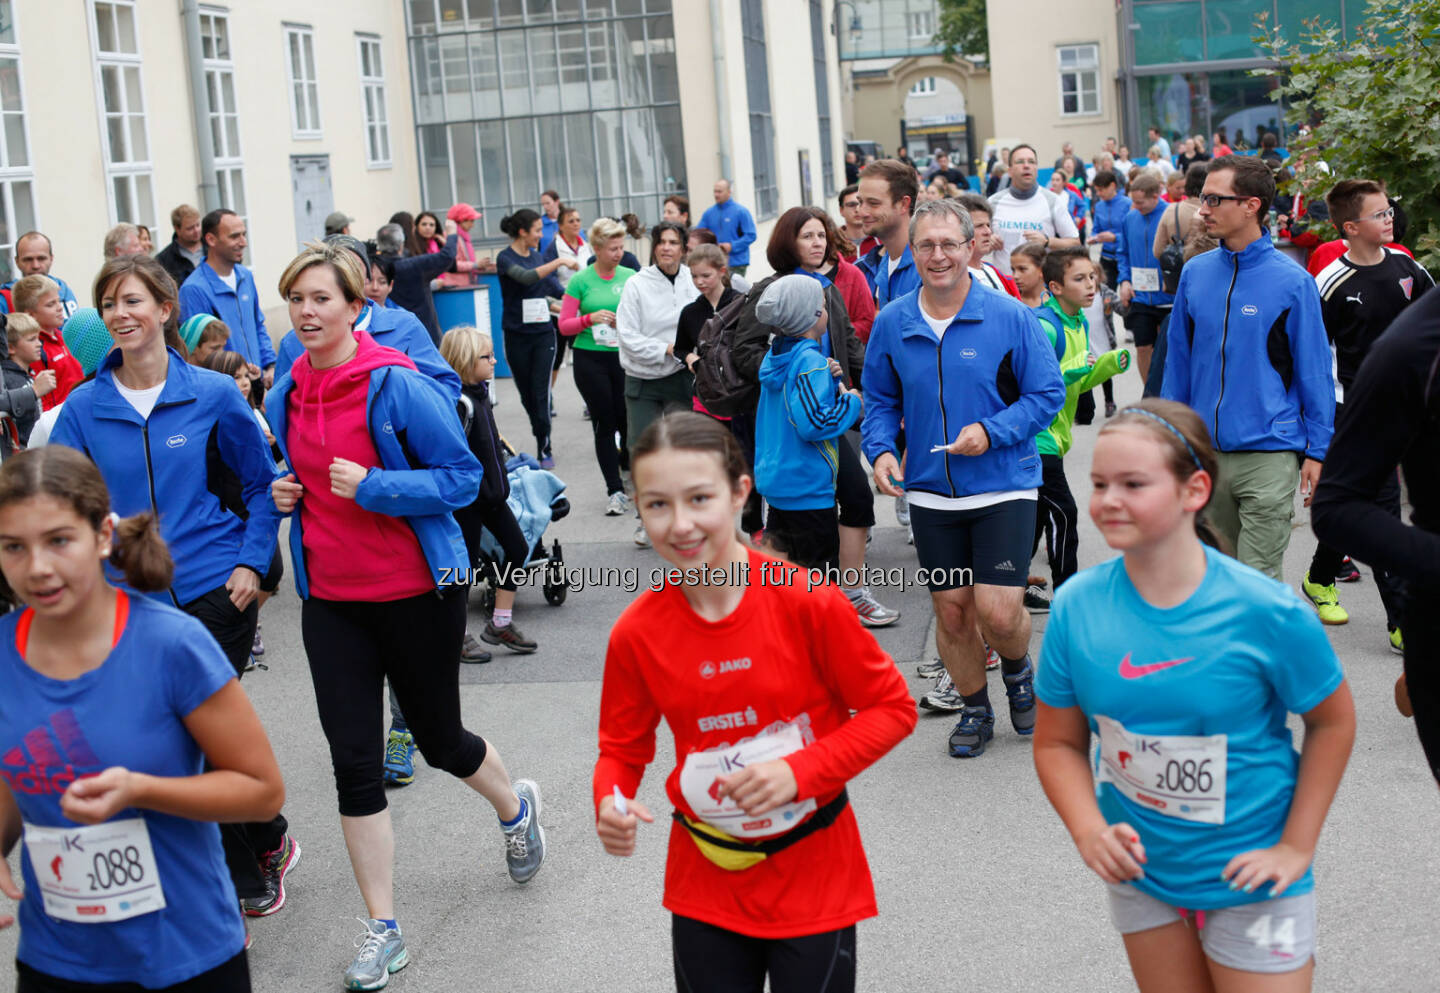 Rund 3.500 LäuferInnen kamen zum 8. Krebsforschungslauf der Initiative Krebsforschung der Medizinischen Universität Wien, um ihre Startspende und Laufleistung auf dem Uni-Campus Altes AKH für die Krebsforschung zu spenden.